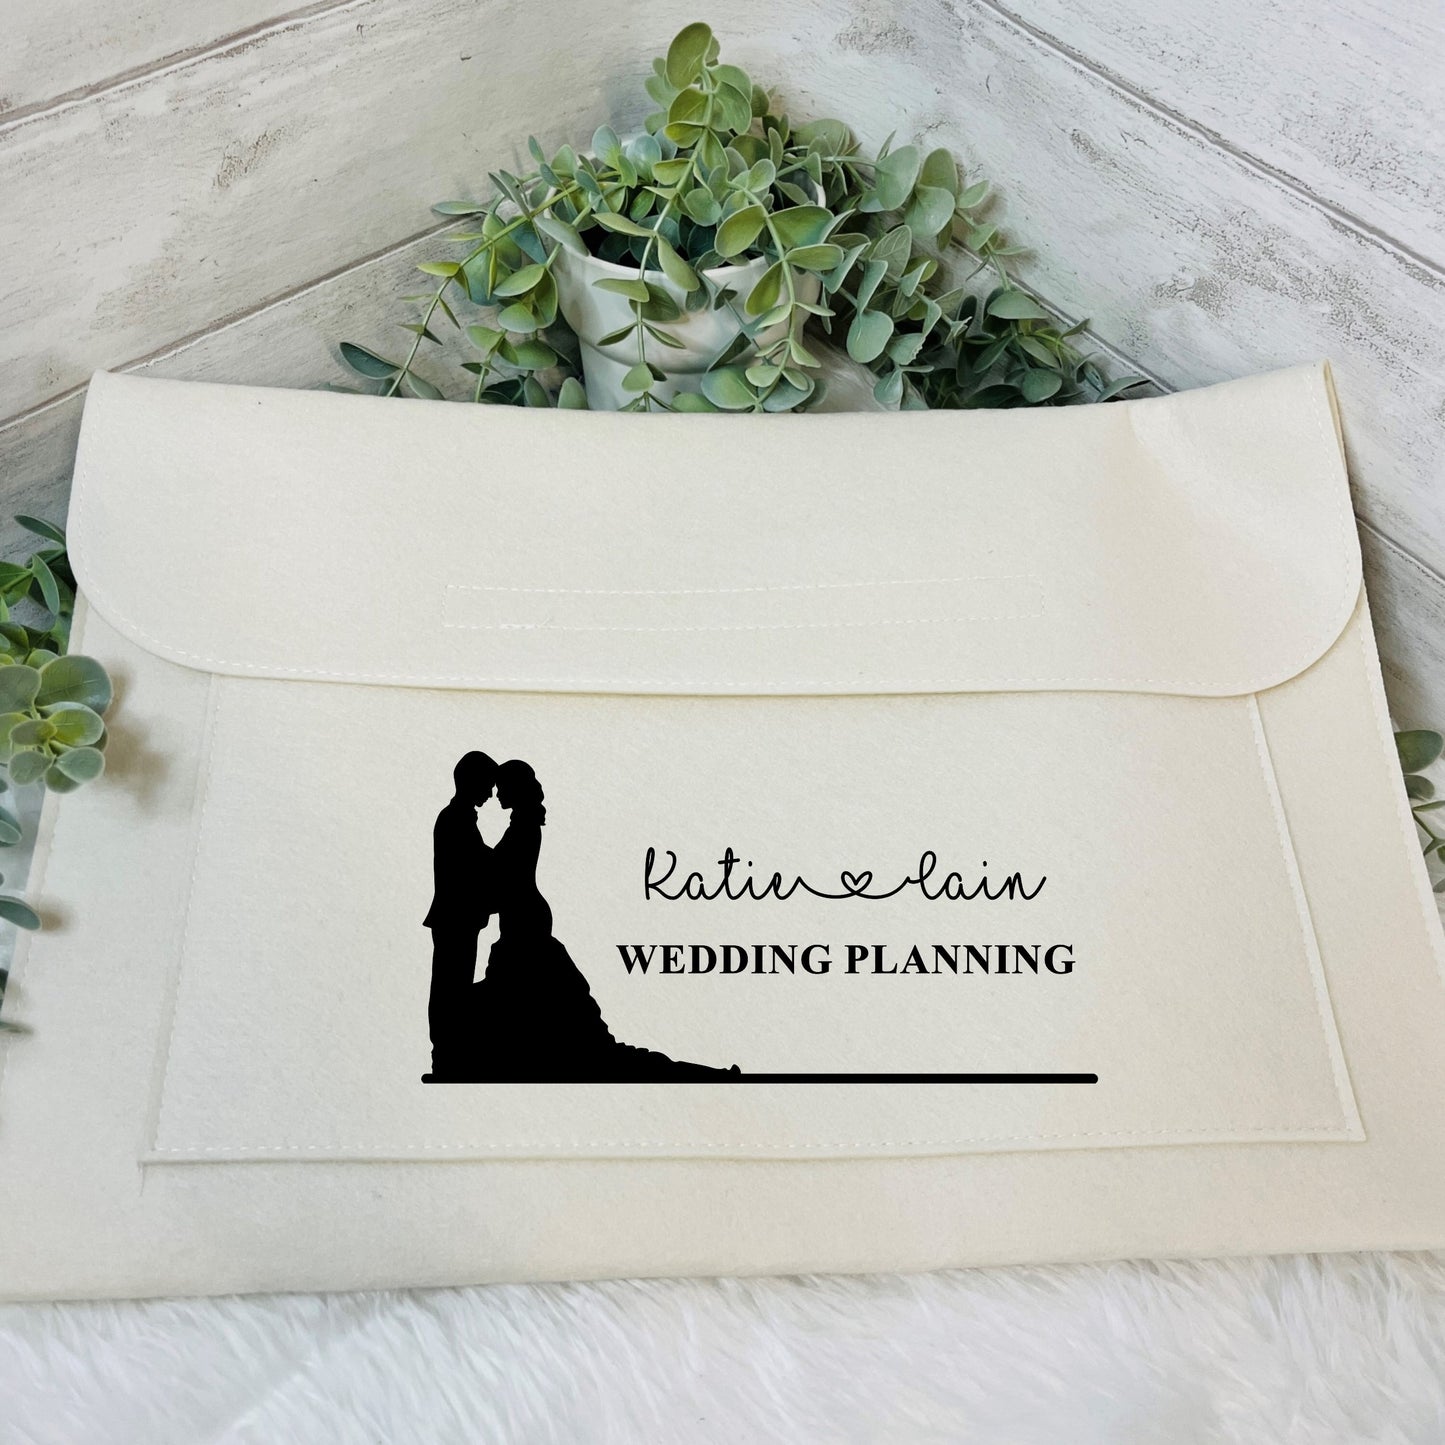 Personalised Wedding Planning Folder, Gifts for the newly engaged couple, Felt Wedding Folder